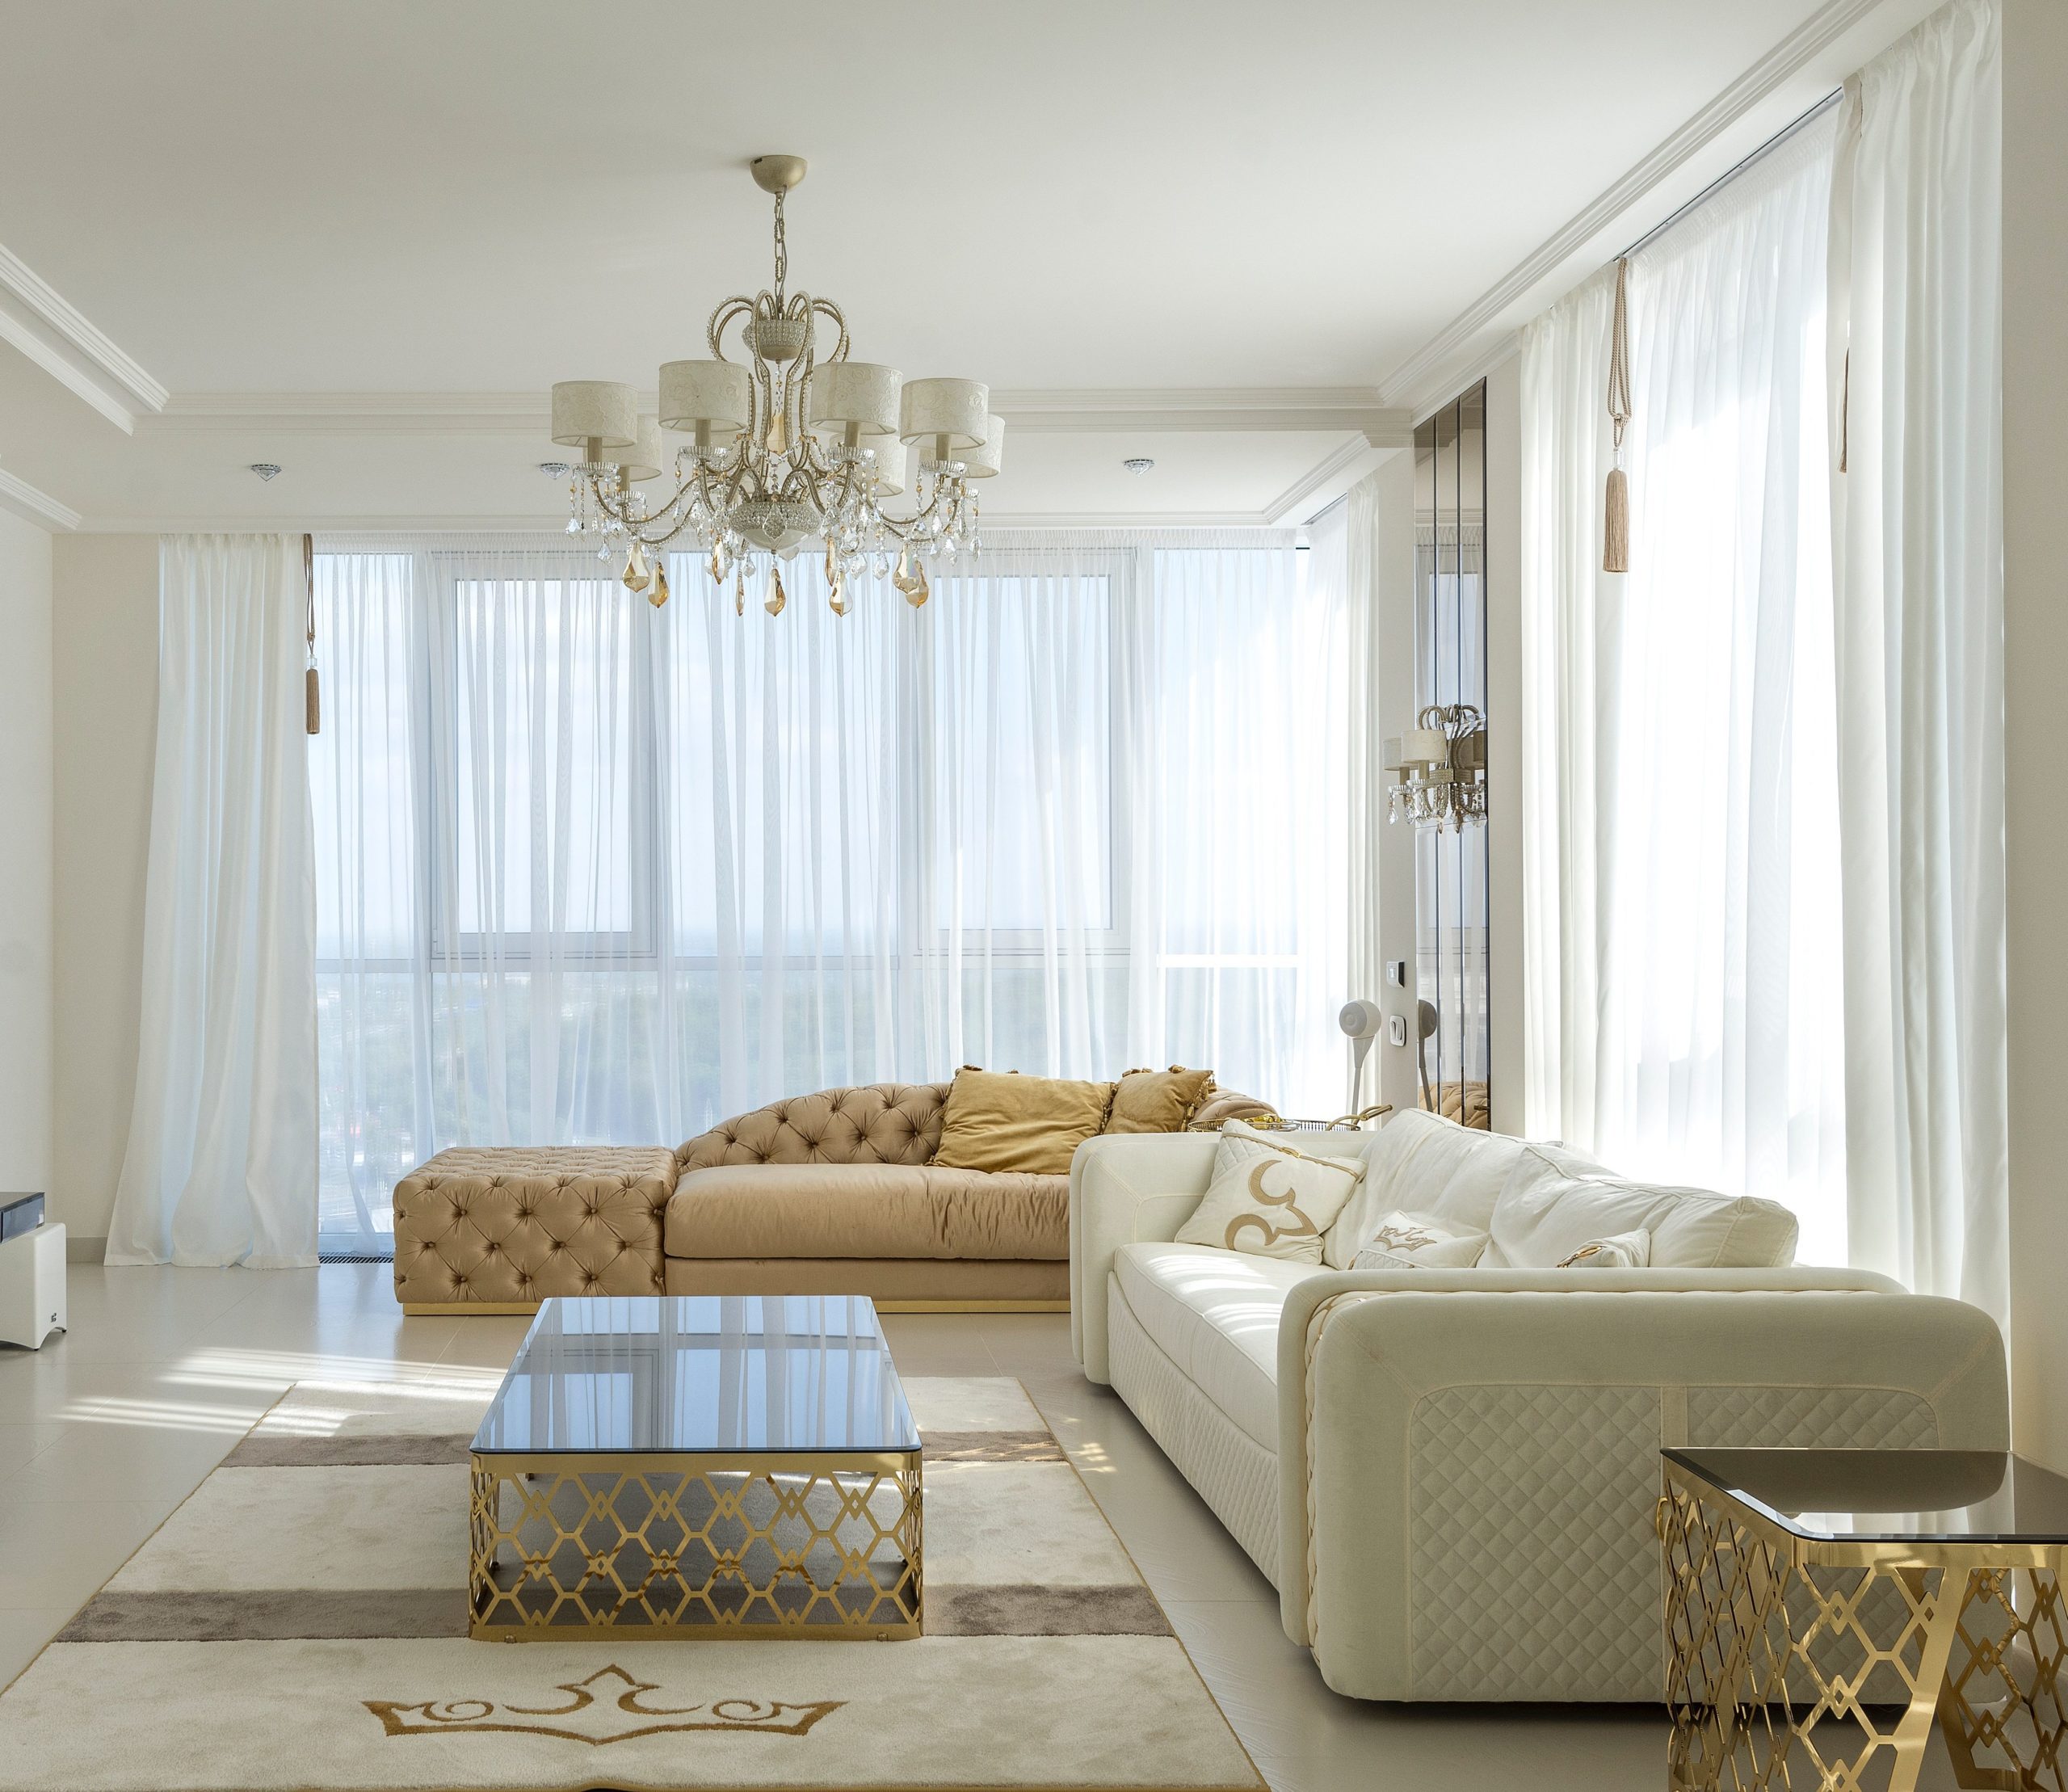 Sala de estar clássica em tons neutros e cortinas em voil branco que levam ainda mais sofisticação ao ambiente. 